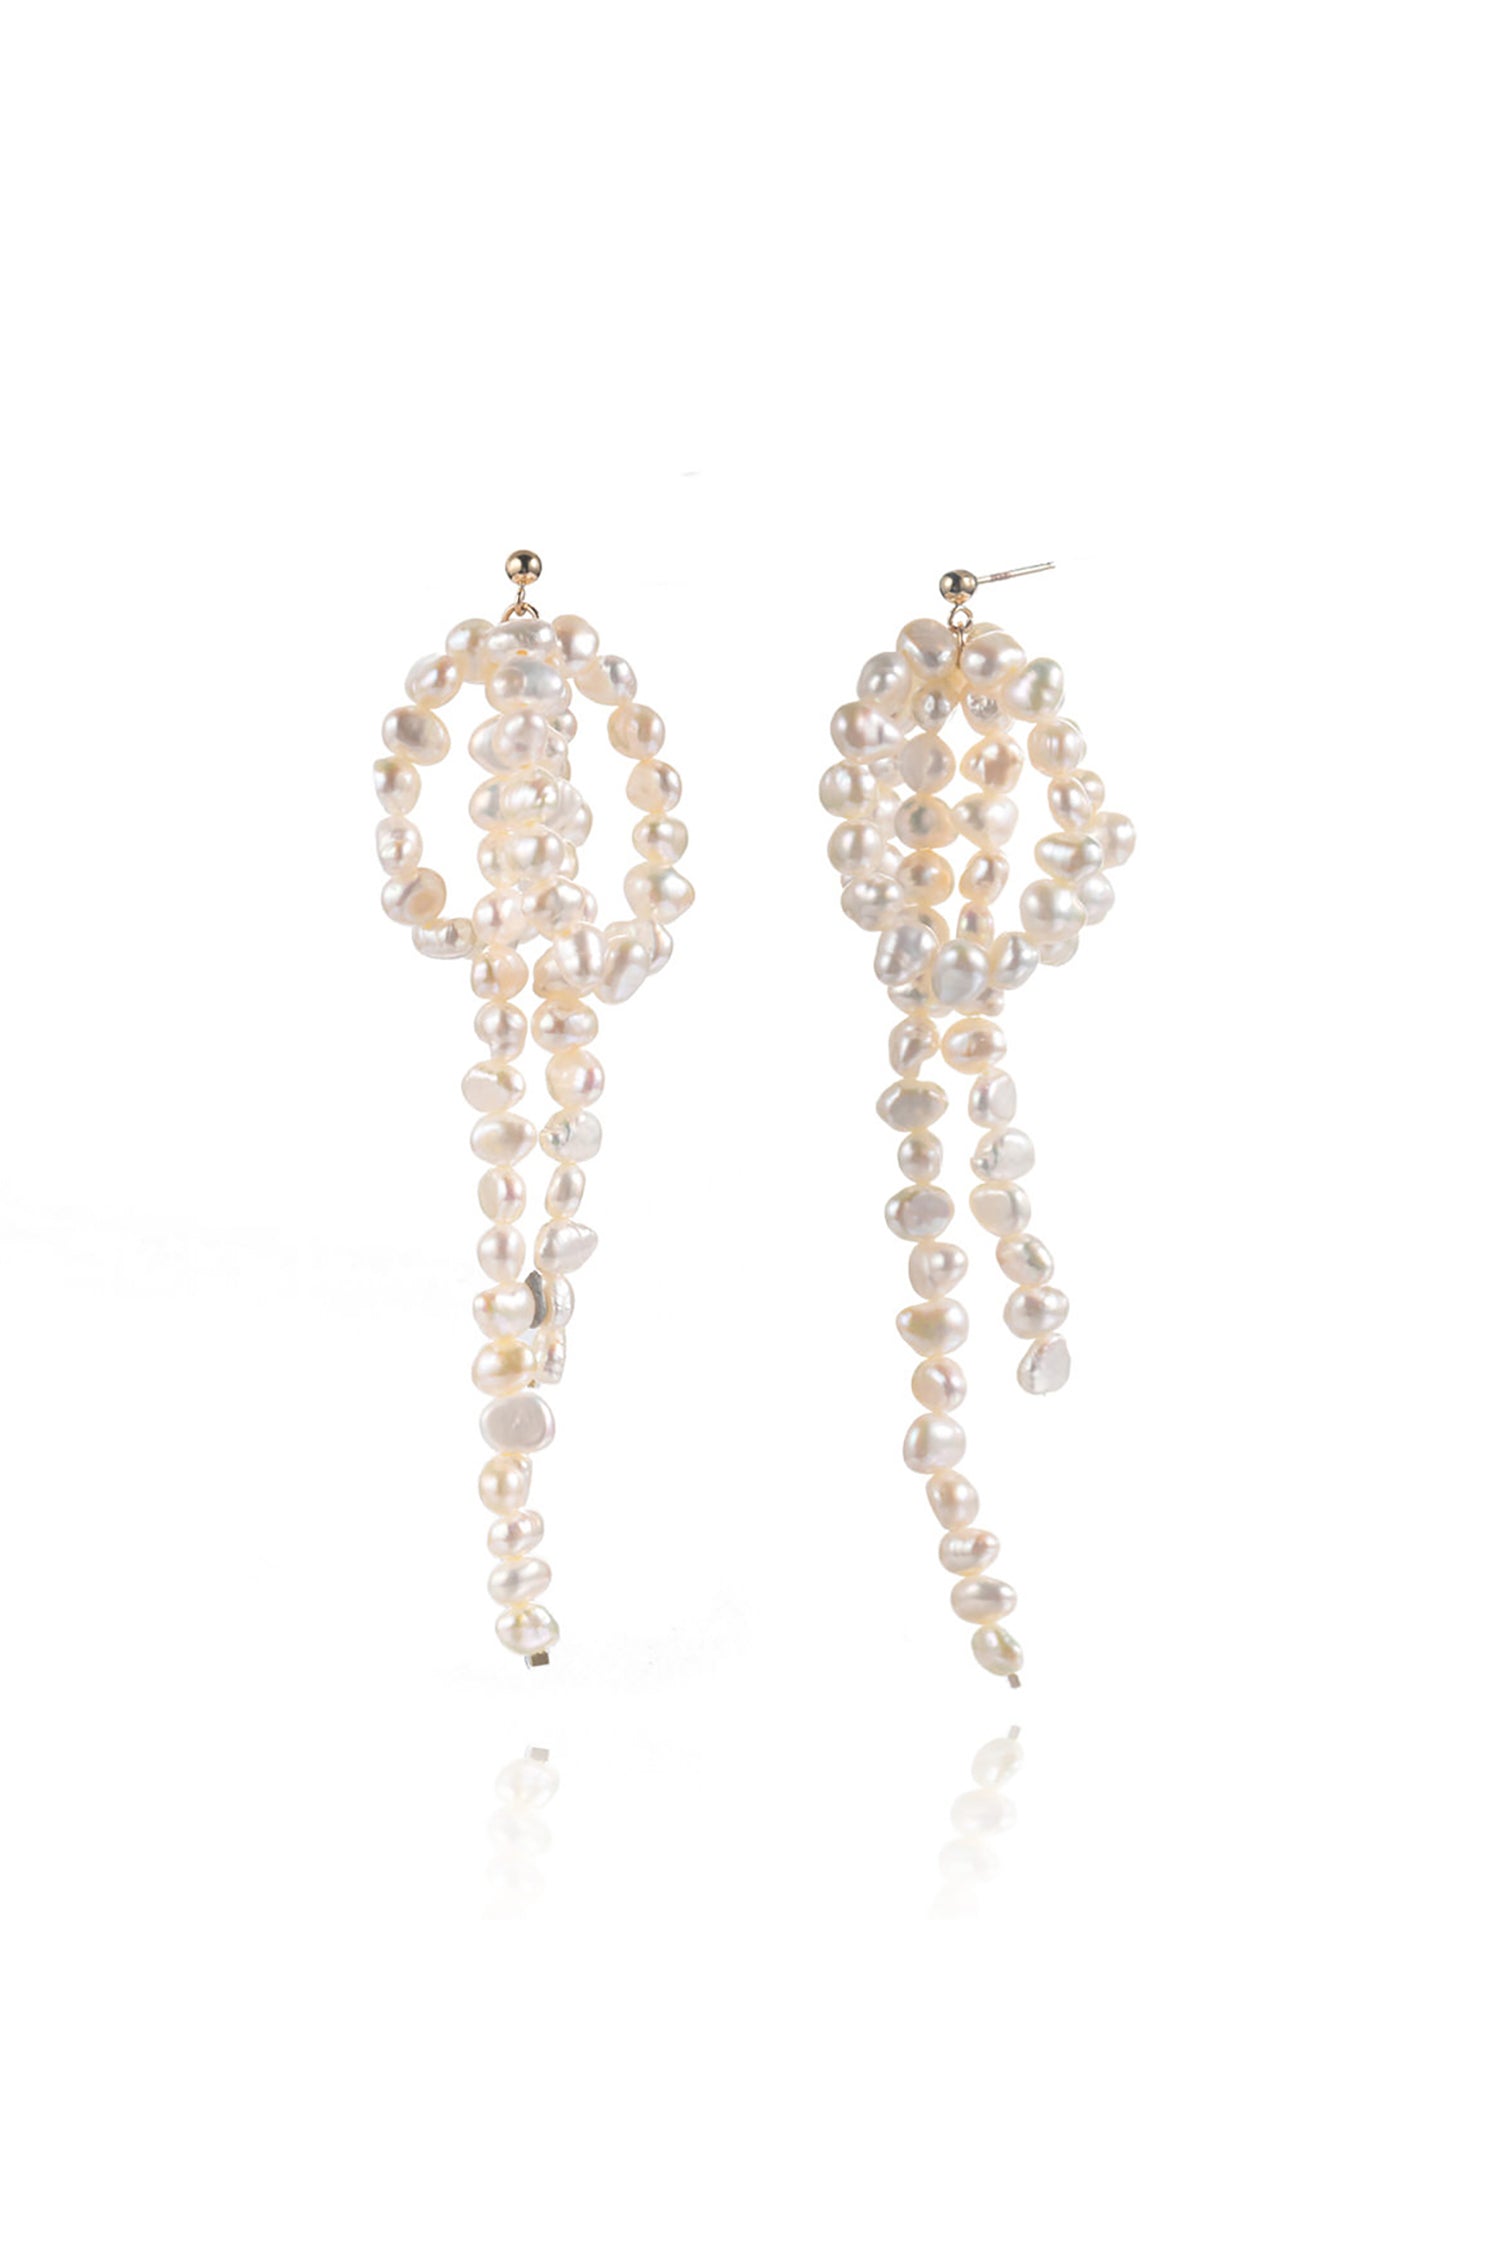 Freshwater Baroque Pearls Flower Design Earrings 14k Gold Filled White Background